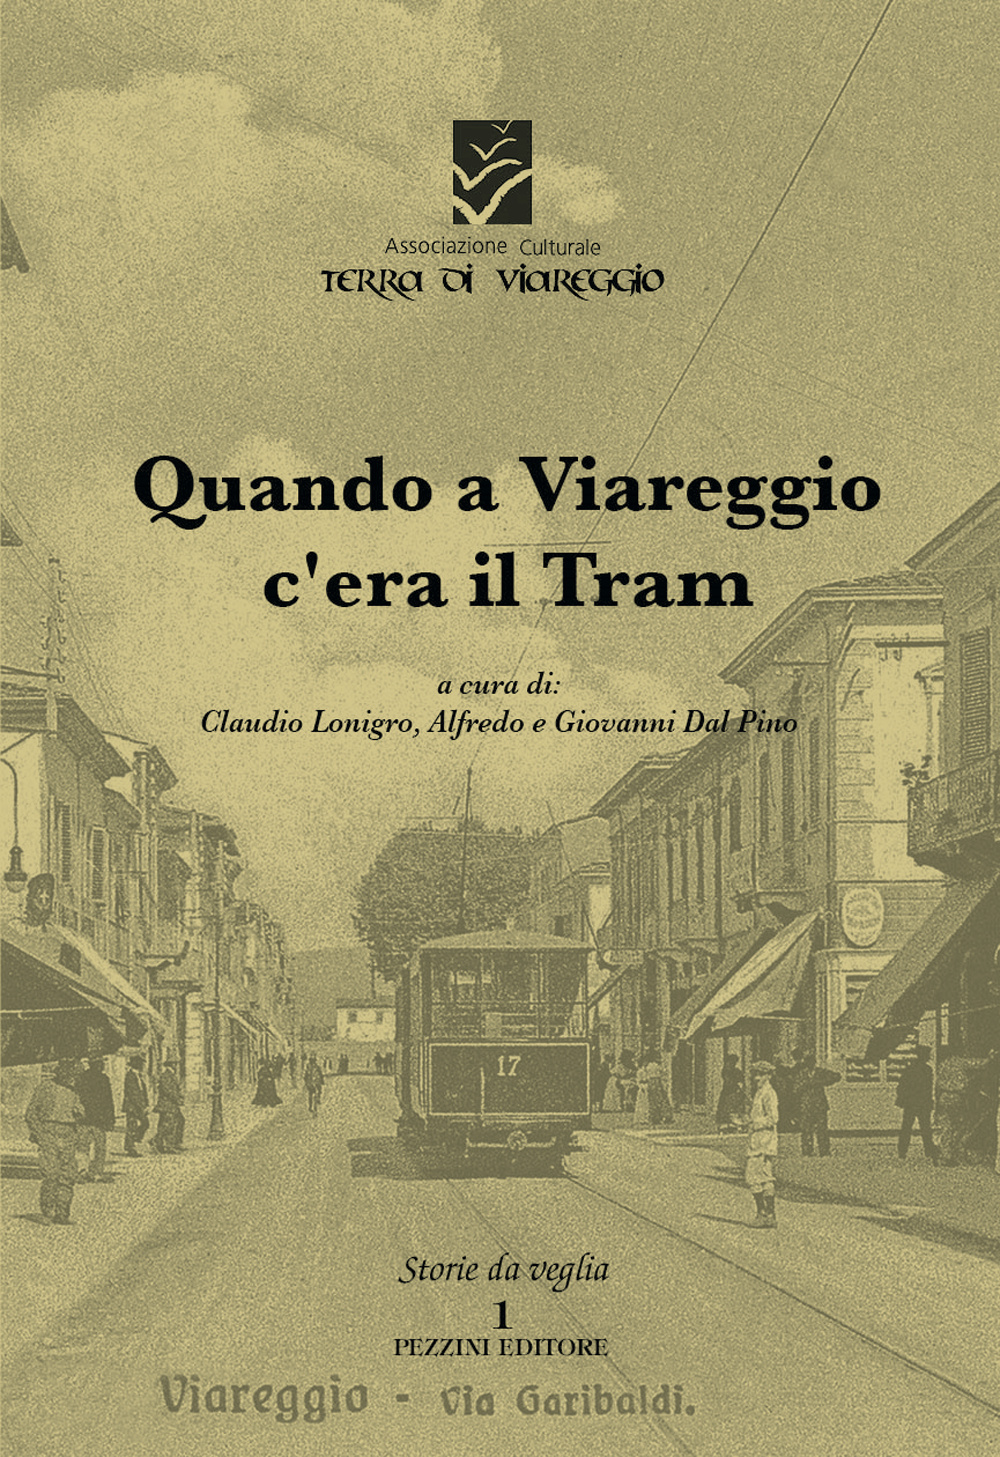 Quando a Viareggio c'era il tram